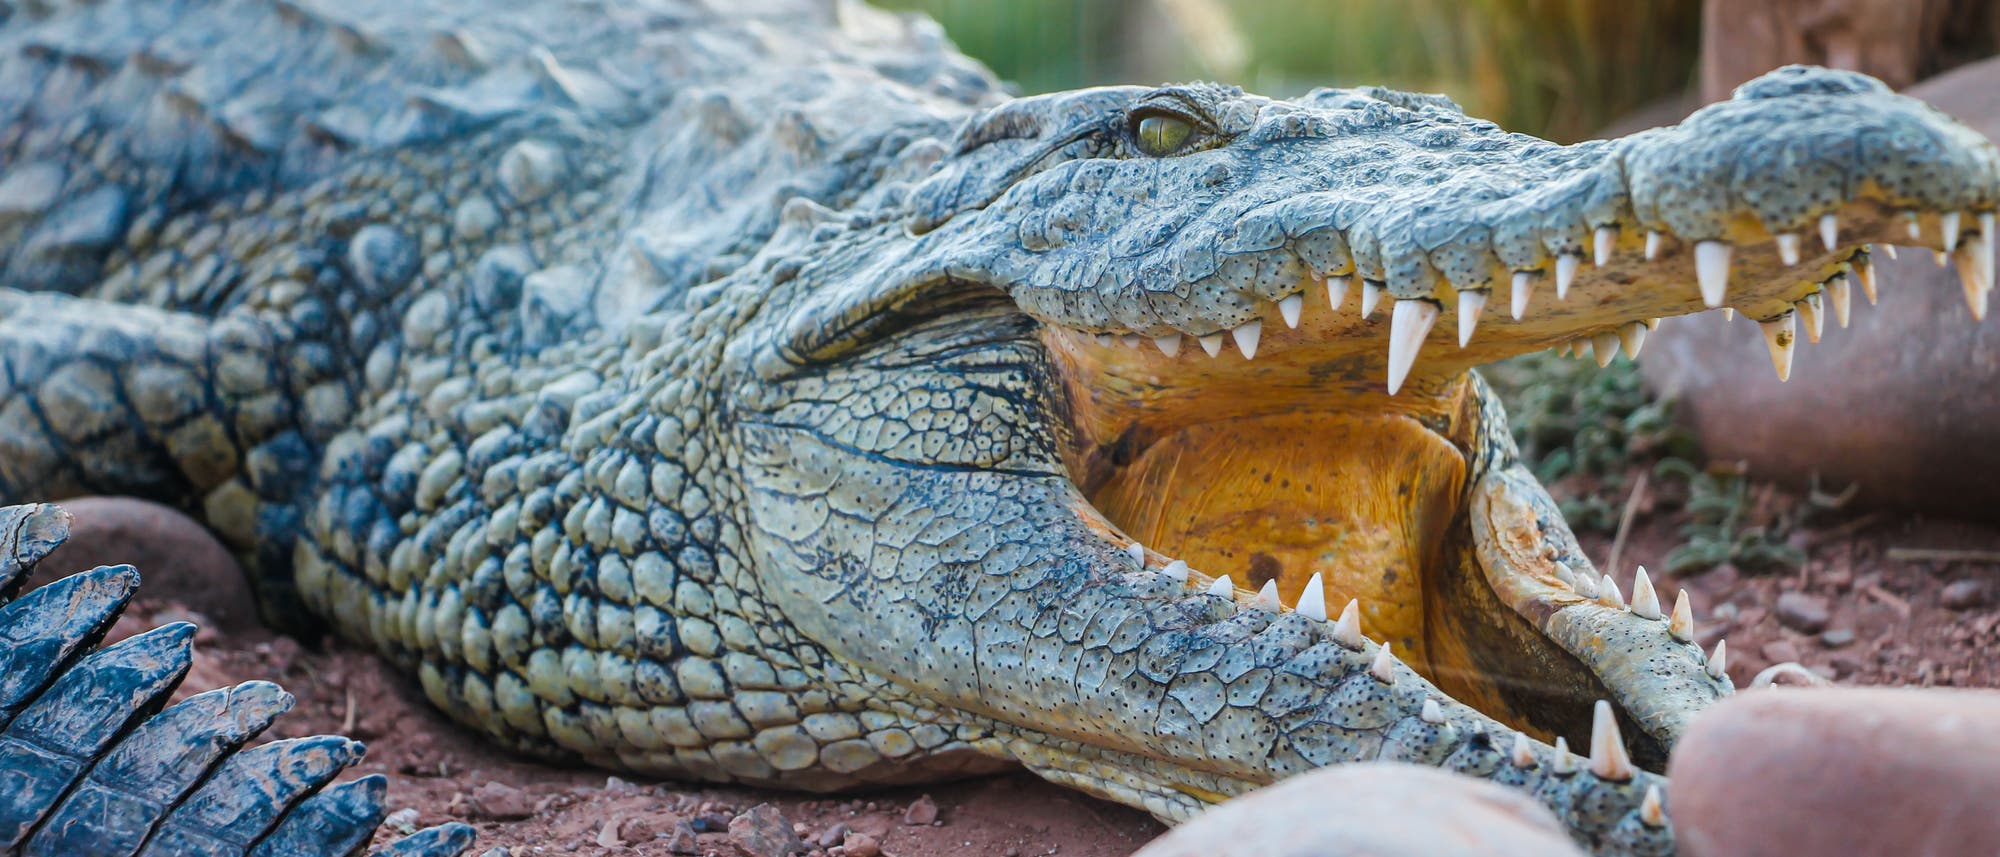 Der Kopf eines aufmerksamen Krokodils